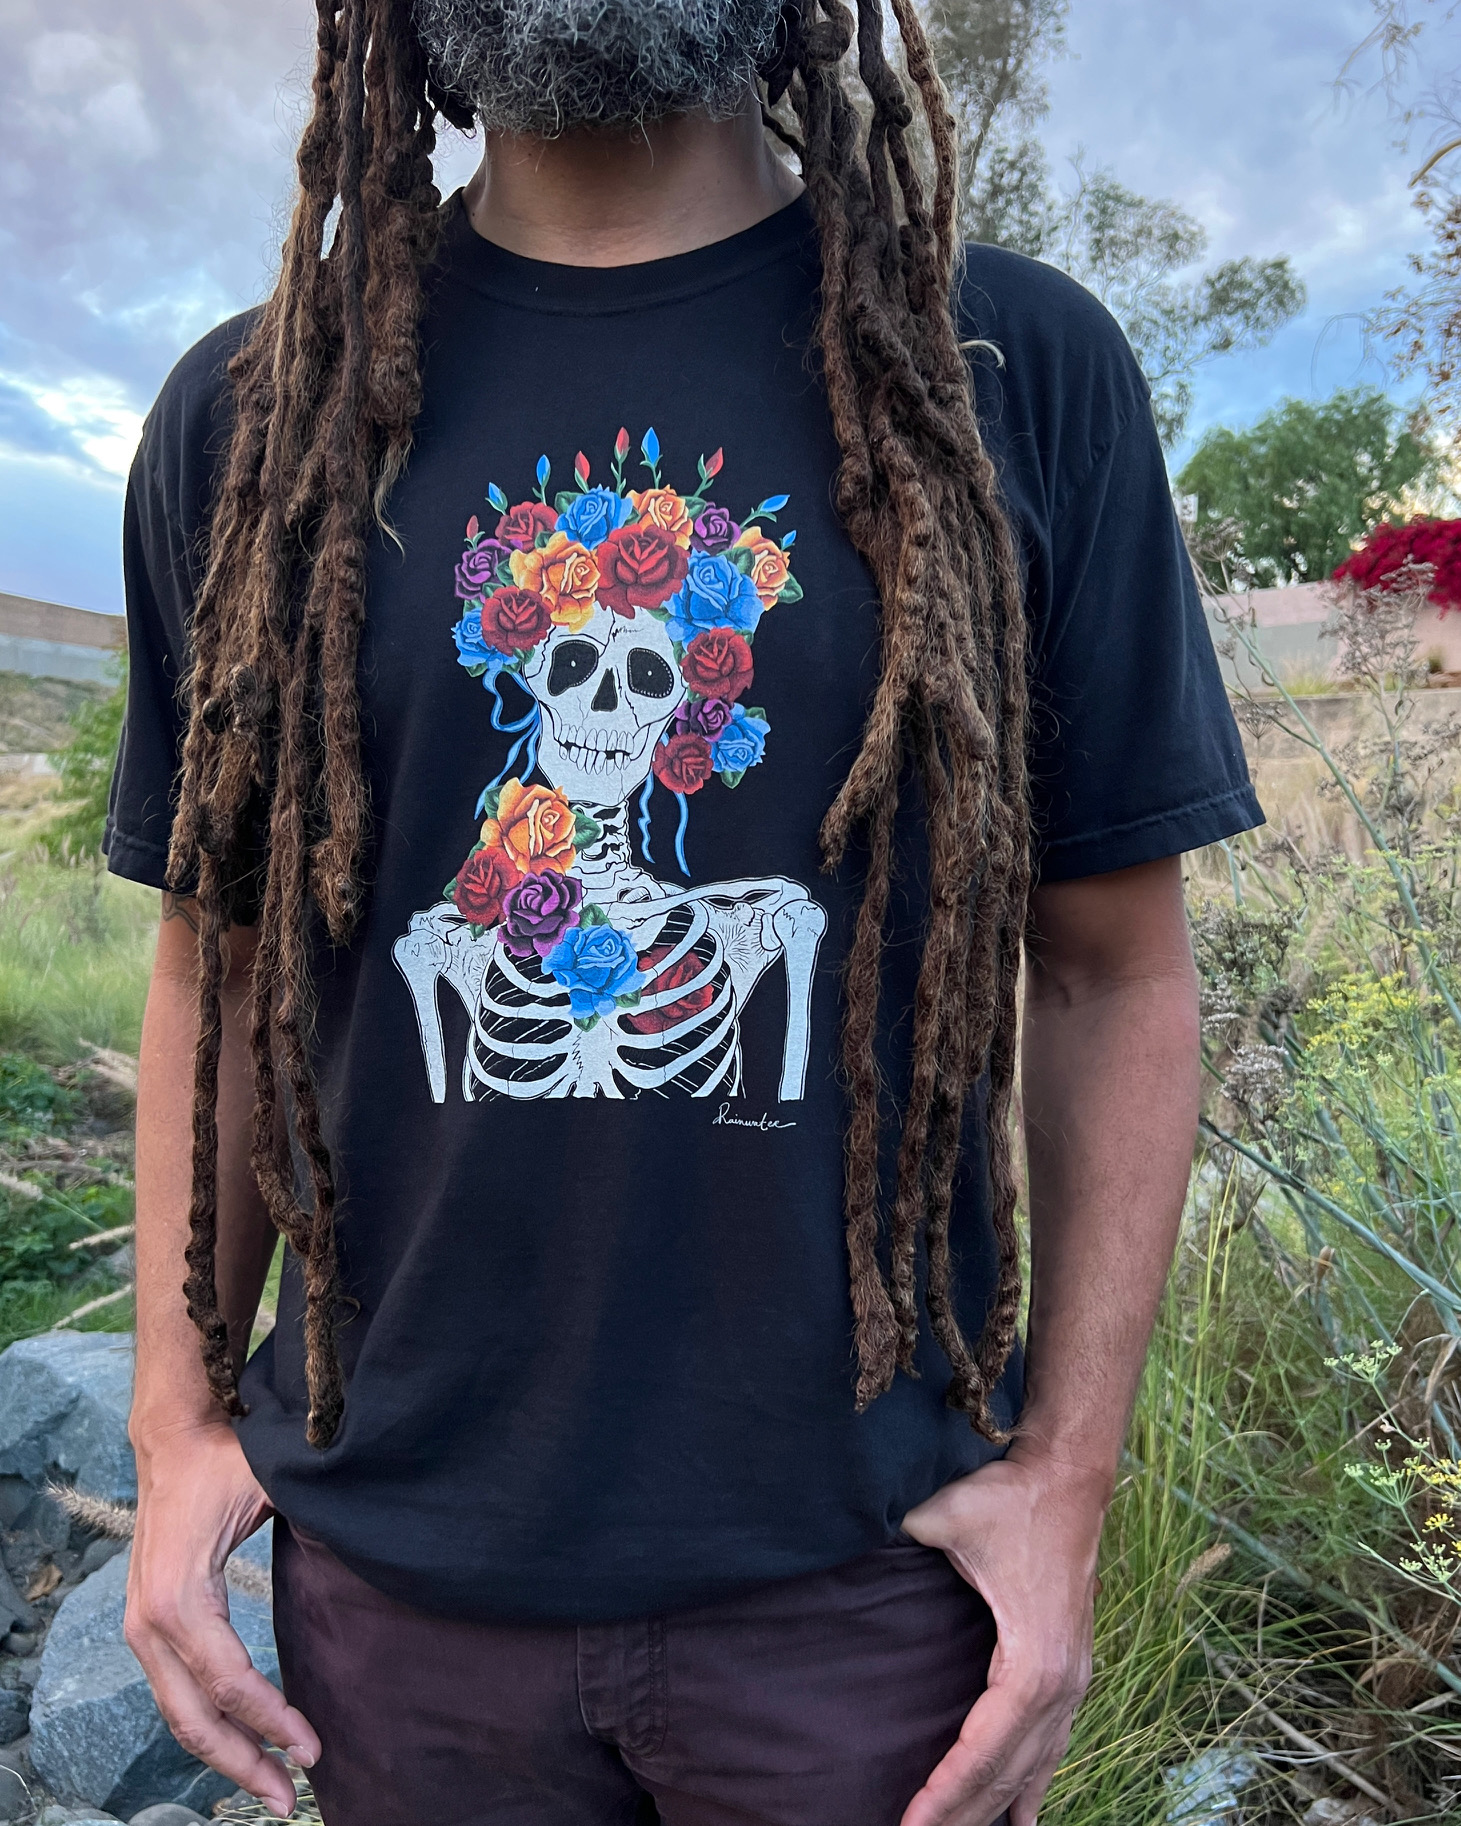 Grateful Dead Skull & Roses T-Shirt - Large